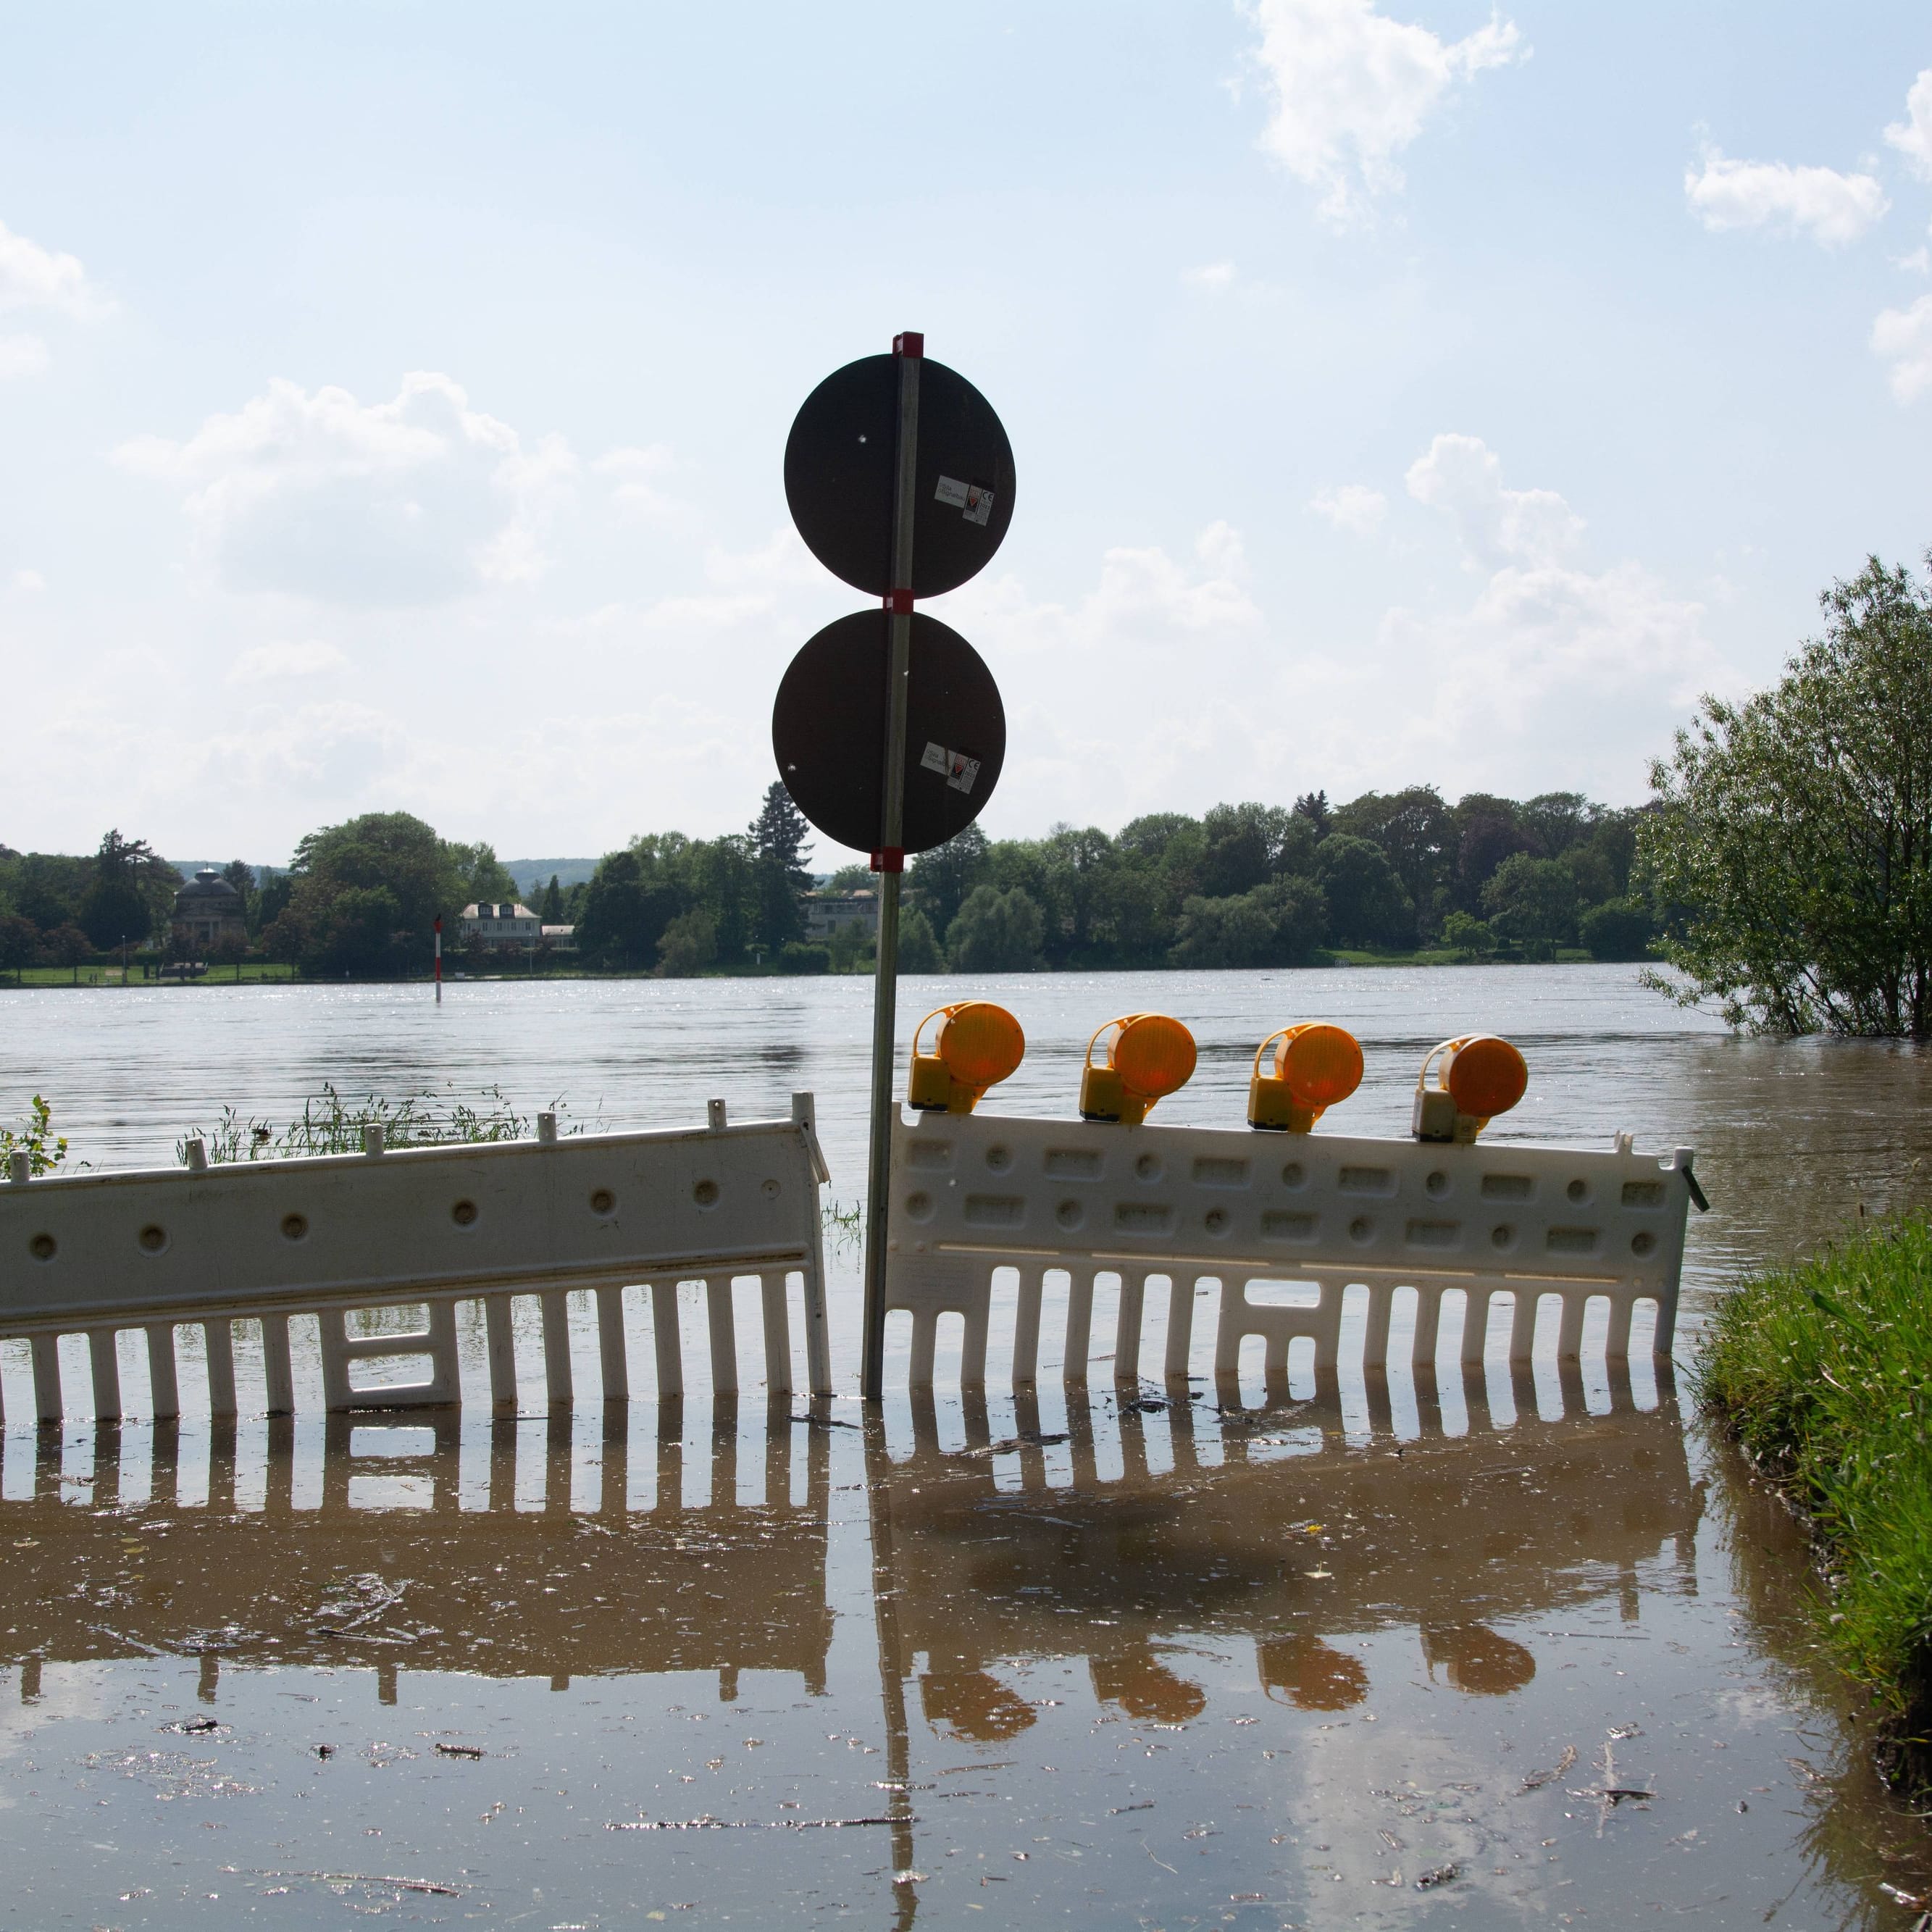 Hochwasser am Rhein: Die starken Regenfälle im Süden zeigen auch im größten Fluss ihre Wirkung.